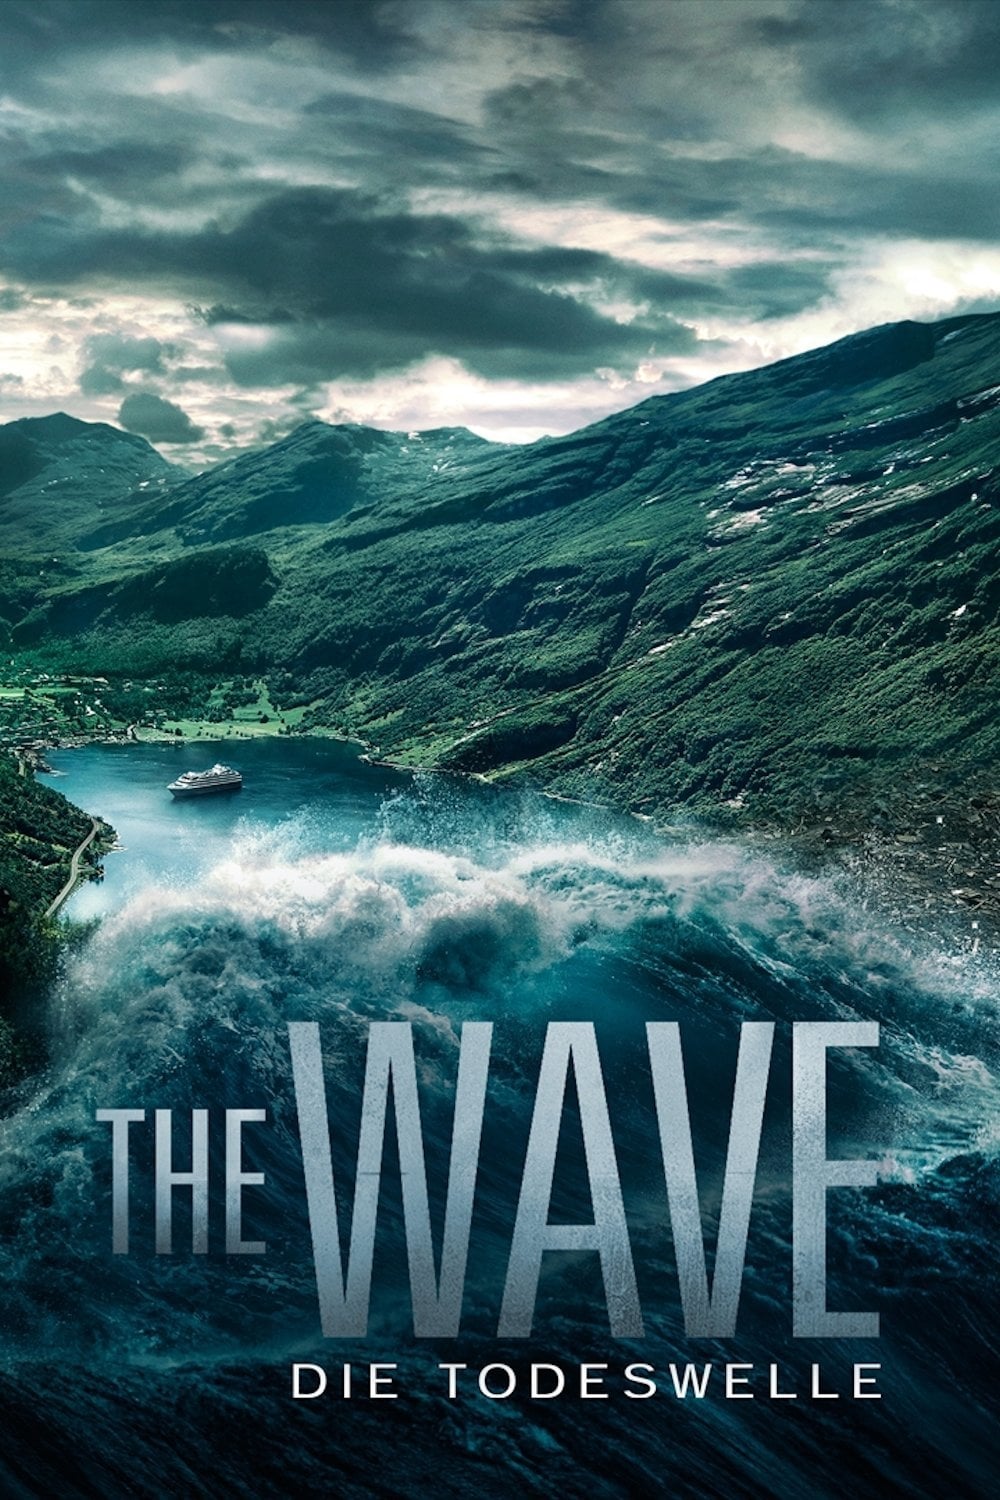 Plakat von "The Wave - Die Todeswelle"